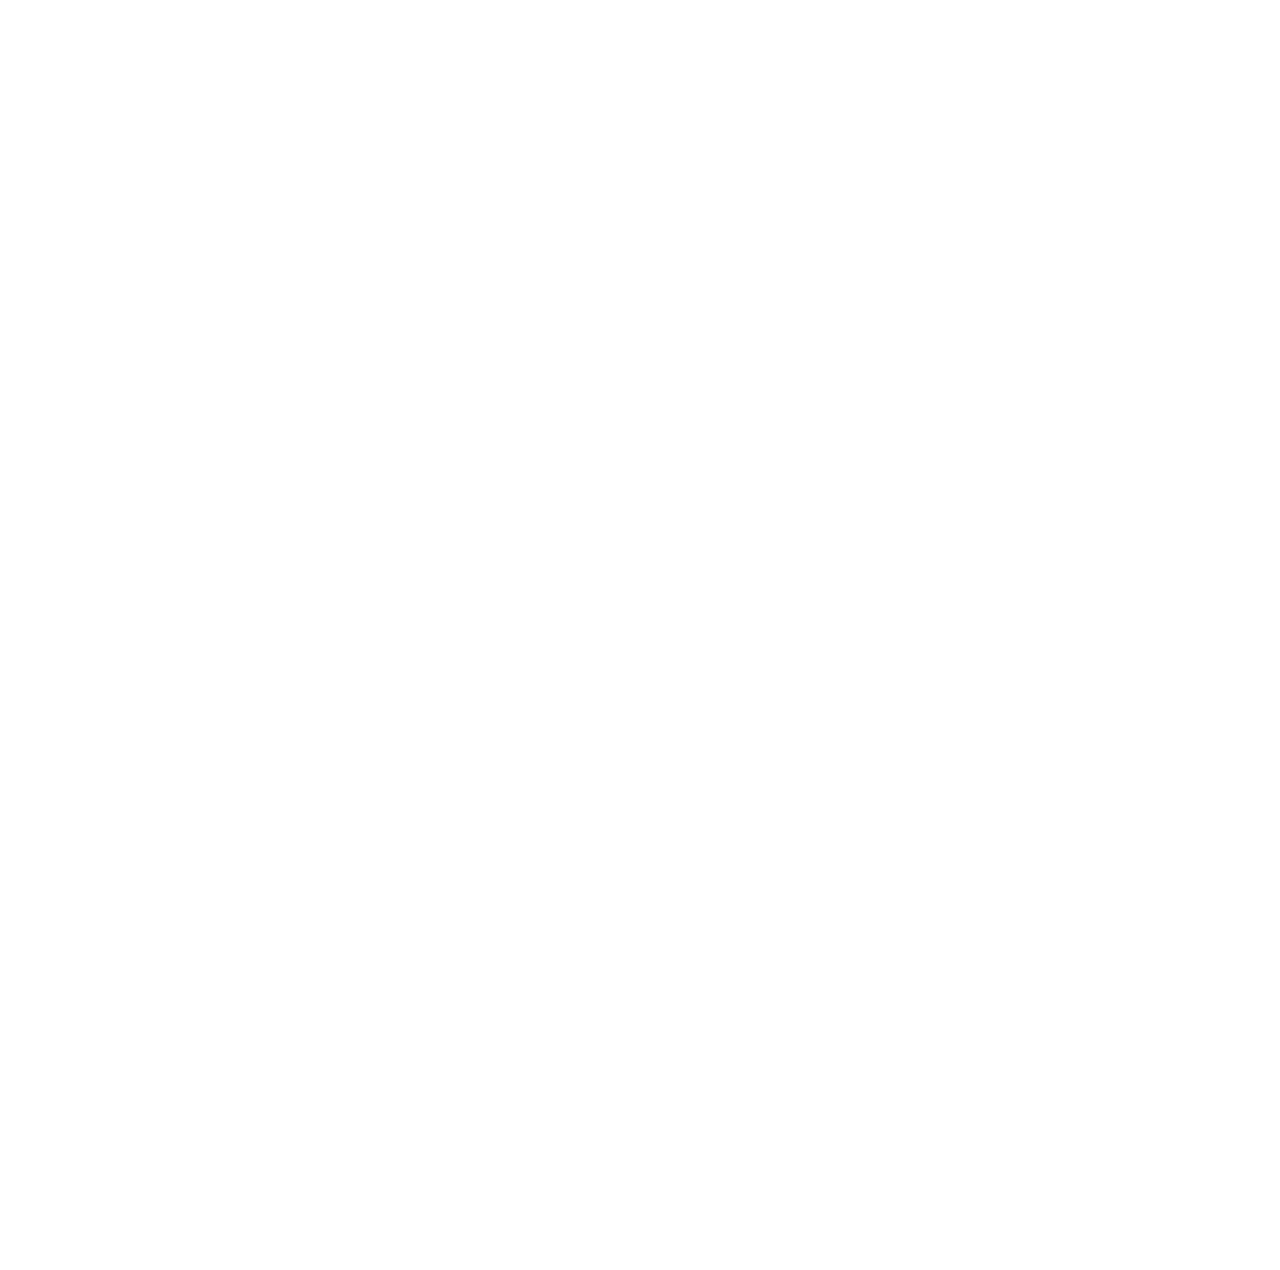 東京カメラ部動画コンテスト